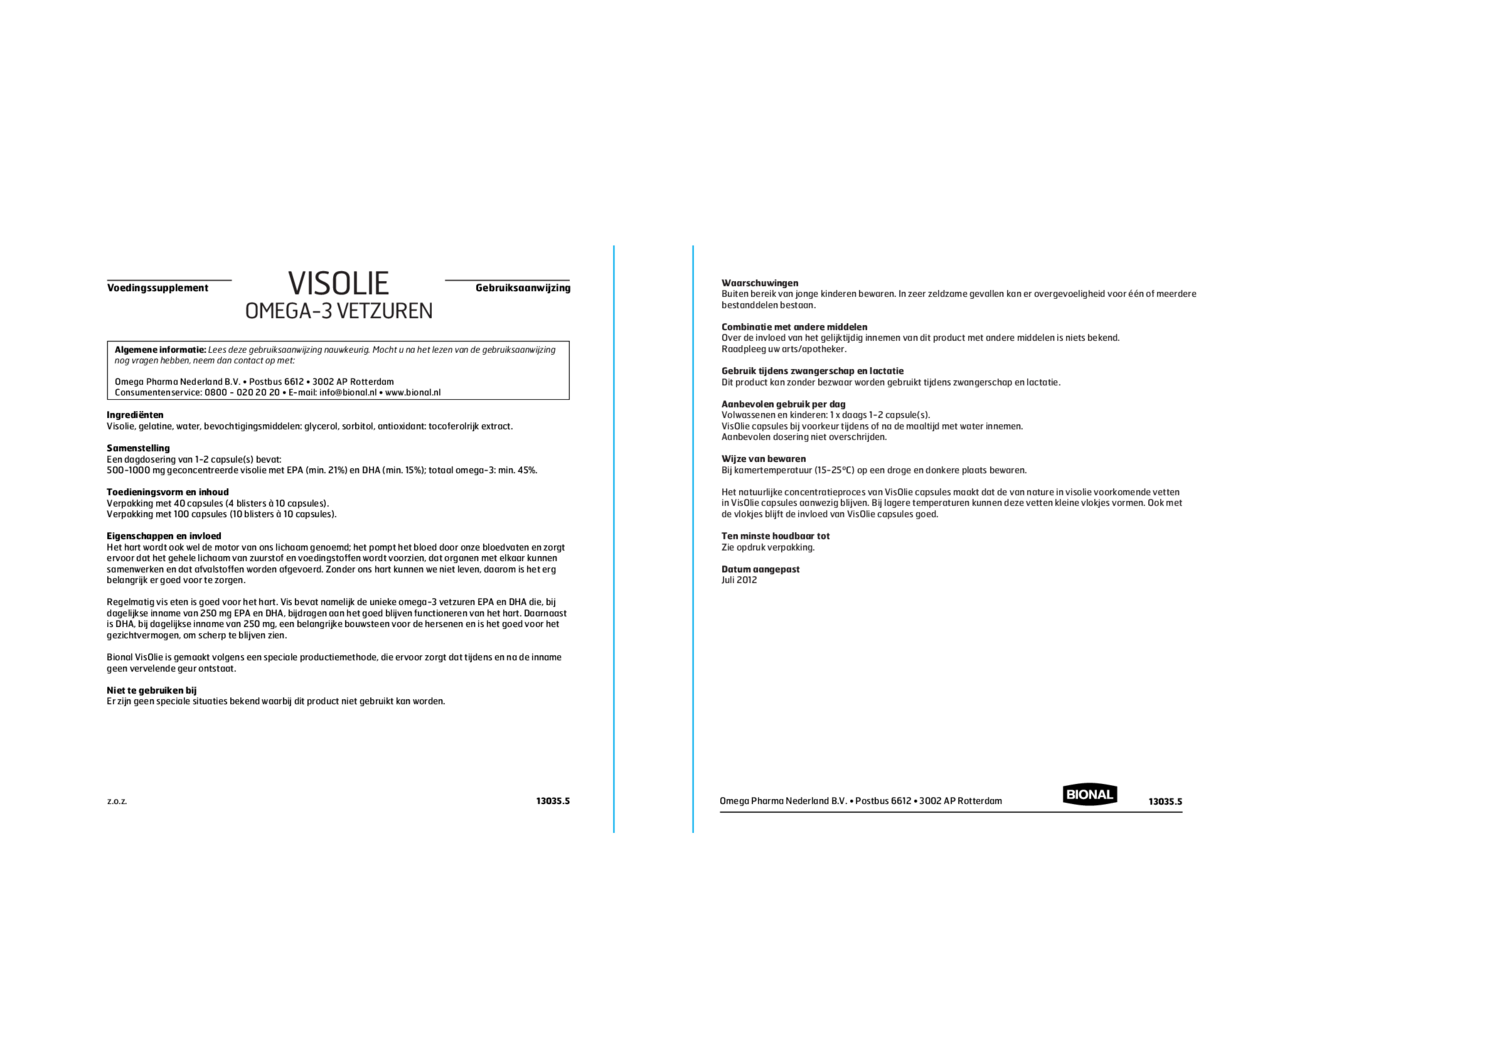 Visolie Omega-3 Vetzuren Capsules afbeelding van document #1, gebruiksaanwijzing